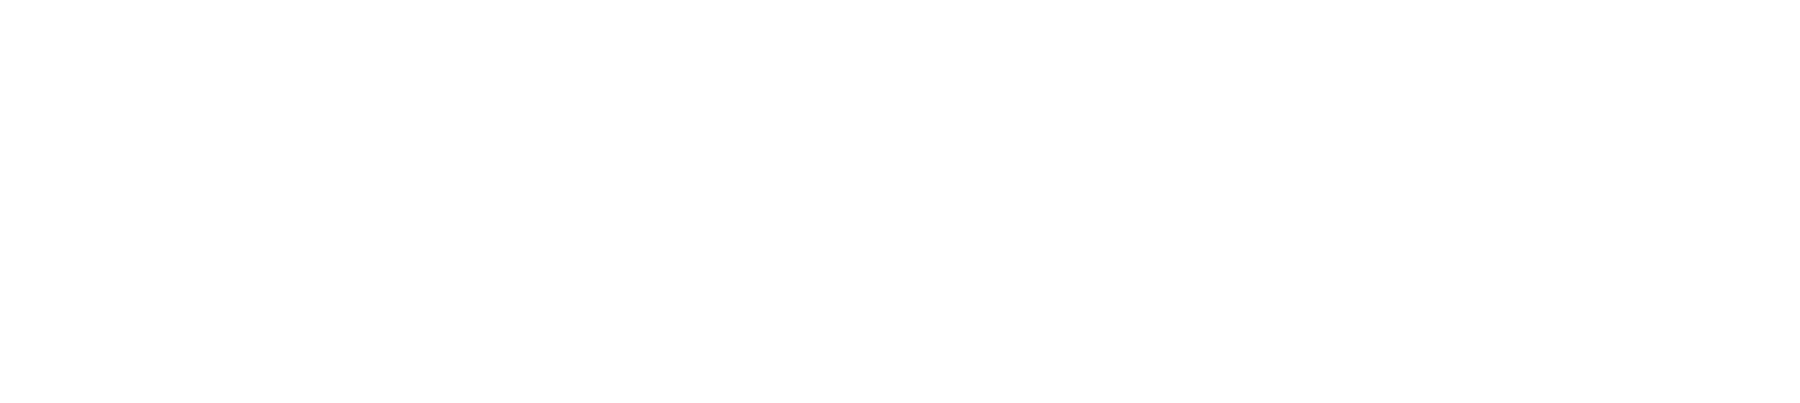 Maine Public Classical